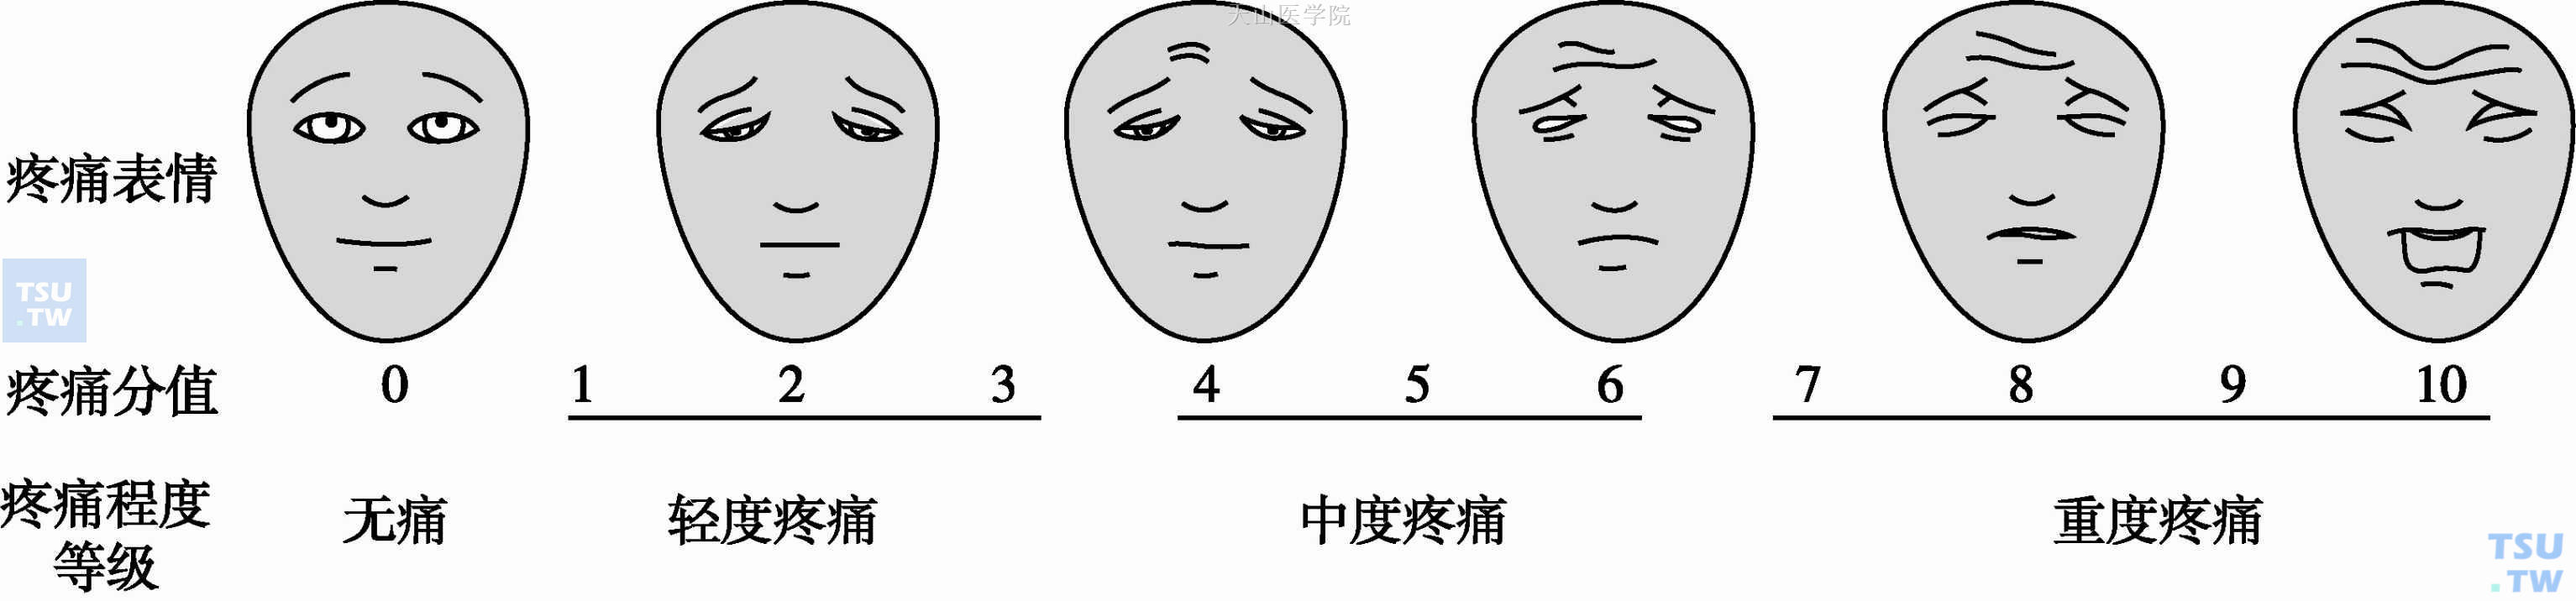 面部表情疼痛评分量表